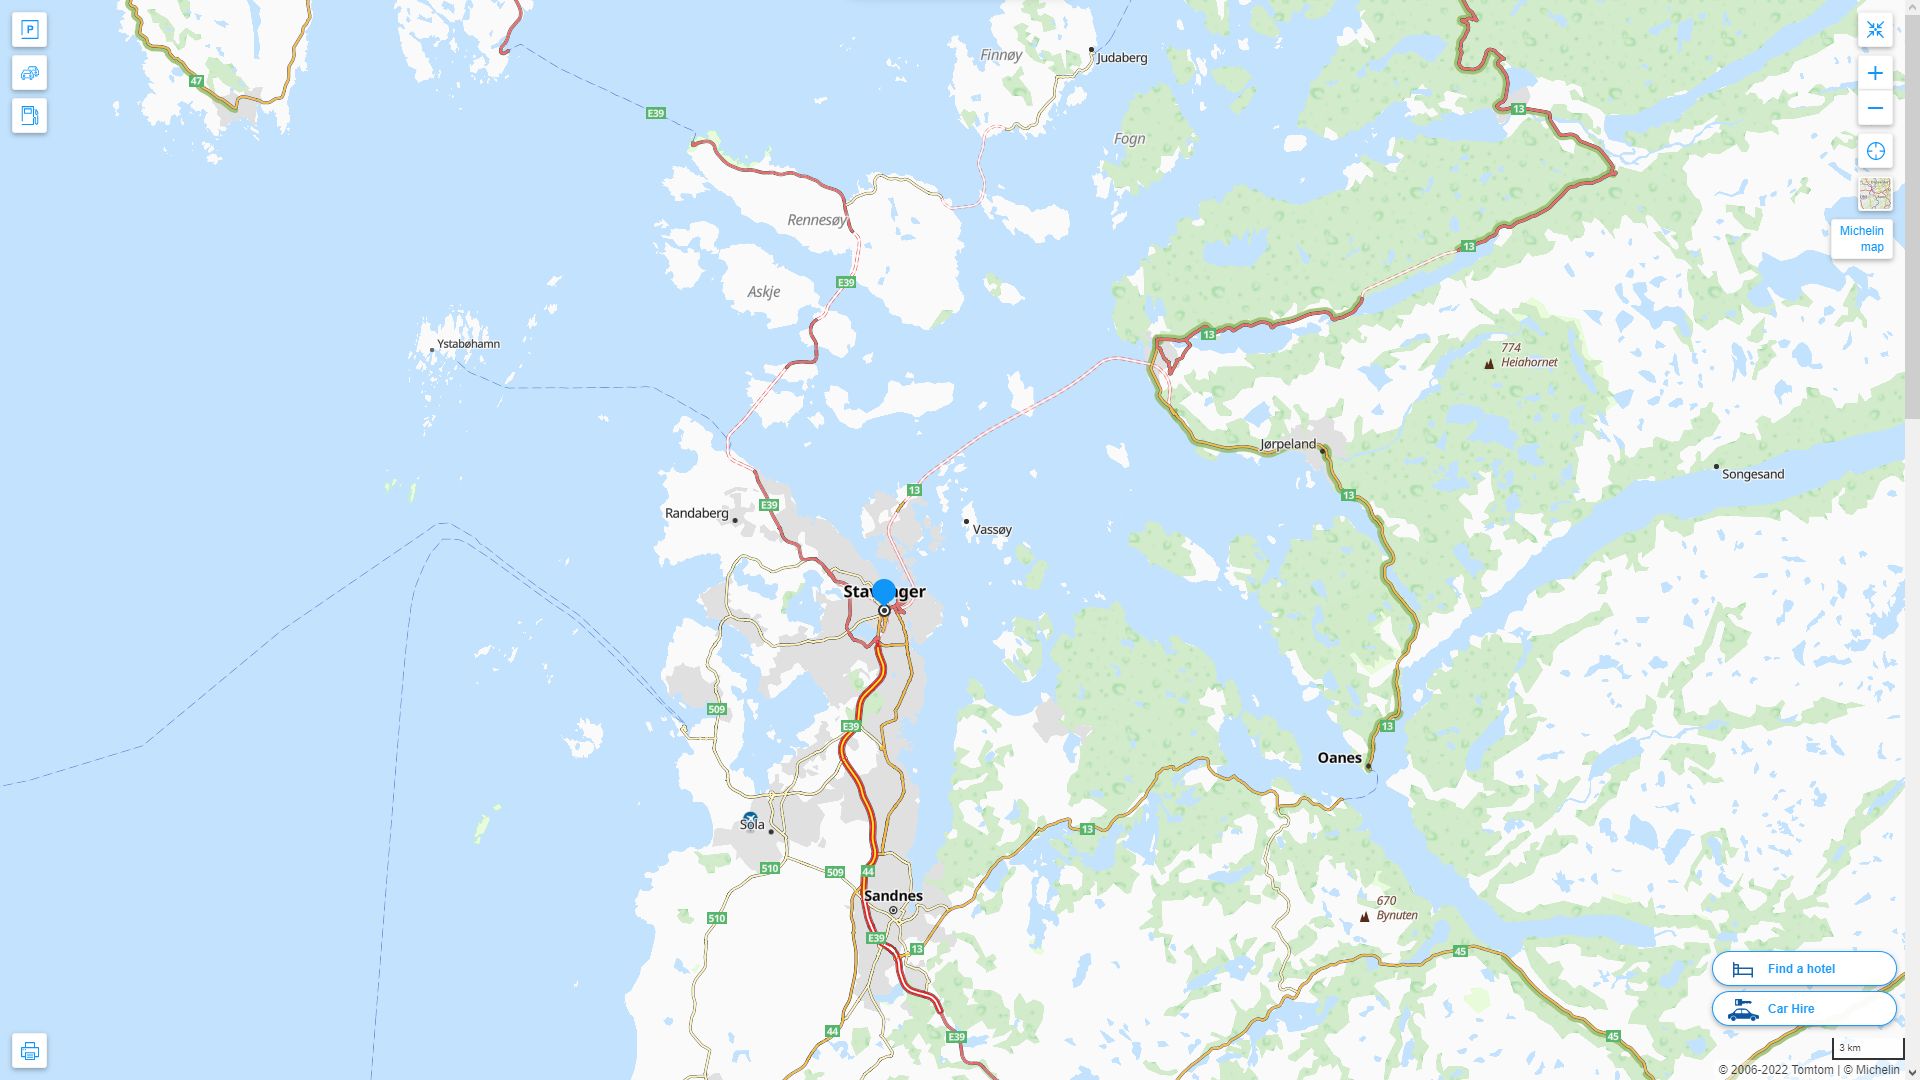 Stavanger Norvege Autoroute et carte routiere